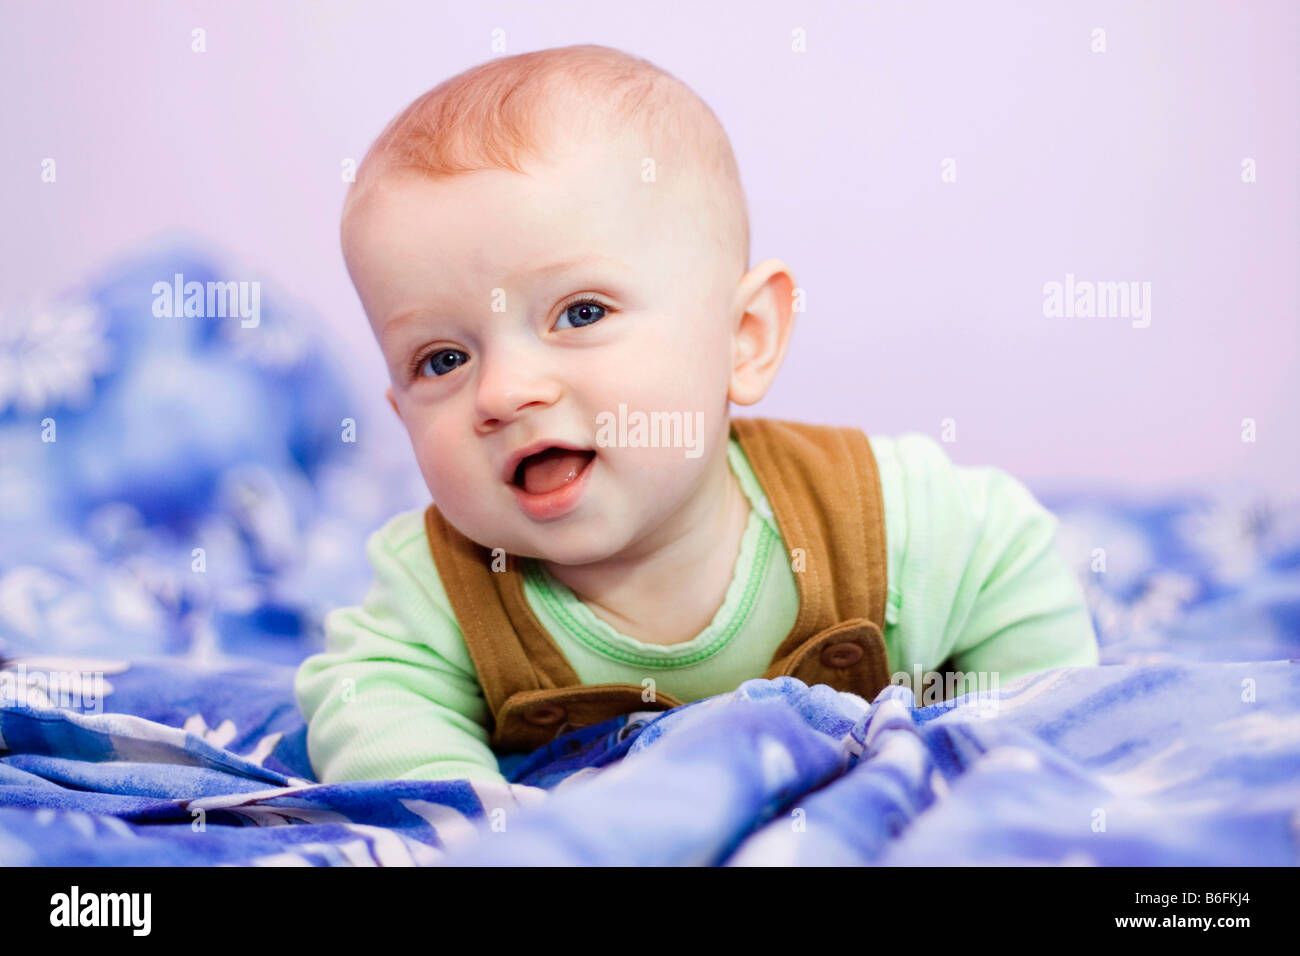 Lächelnden jungen, 7 Monate alt, auf einem Bett Stockfoto